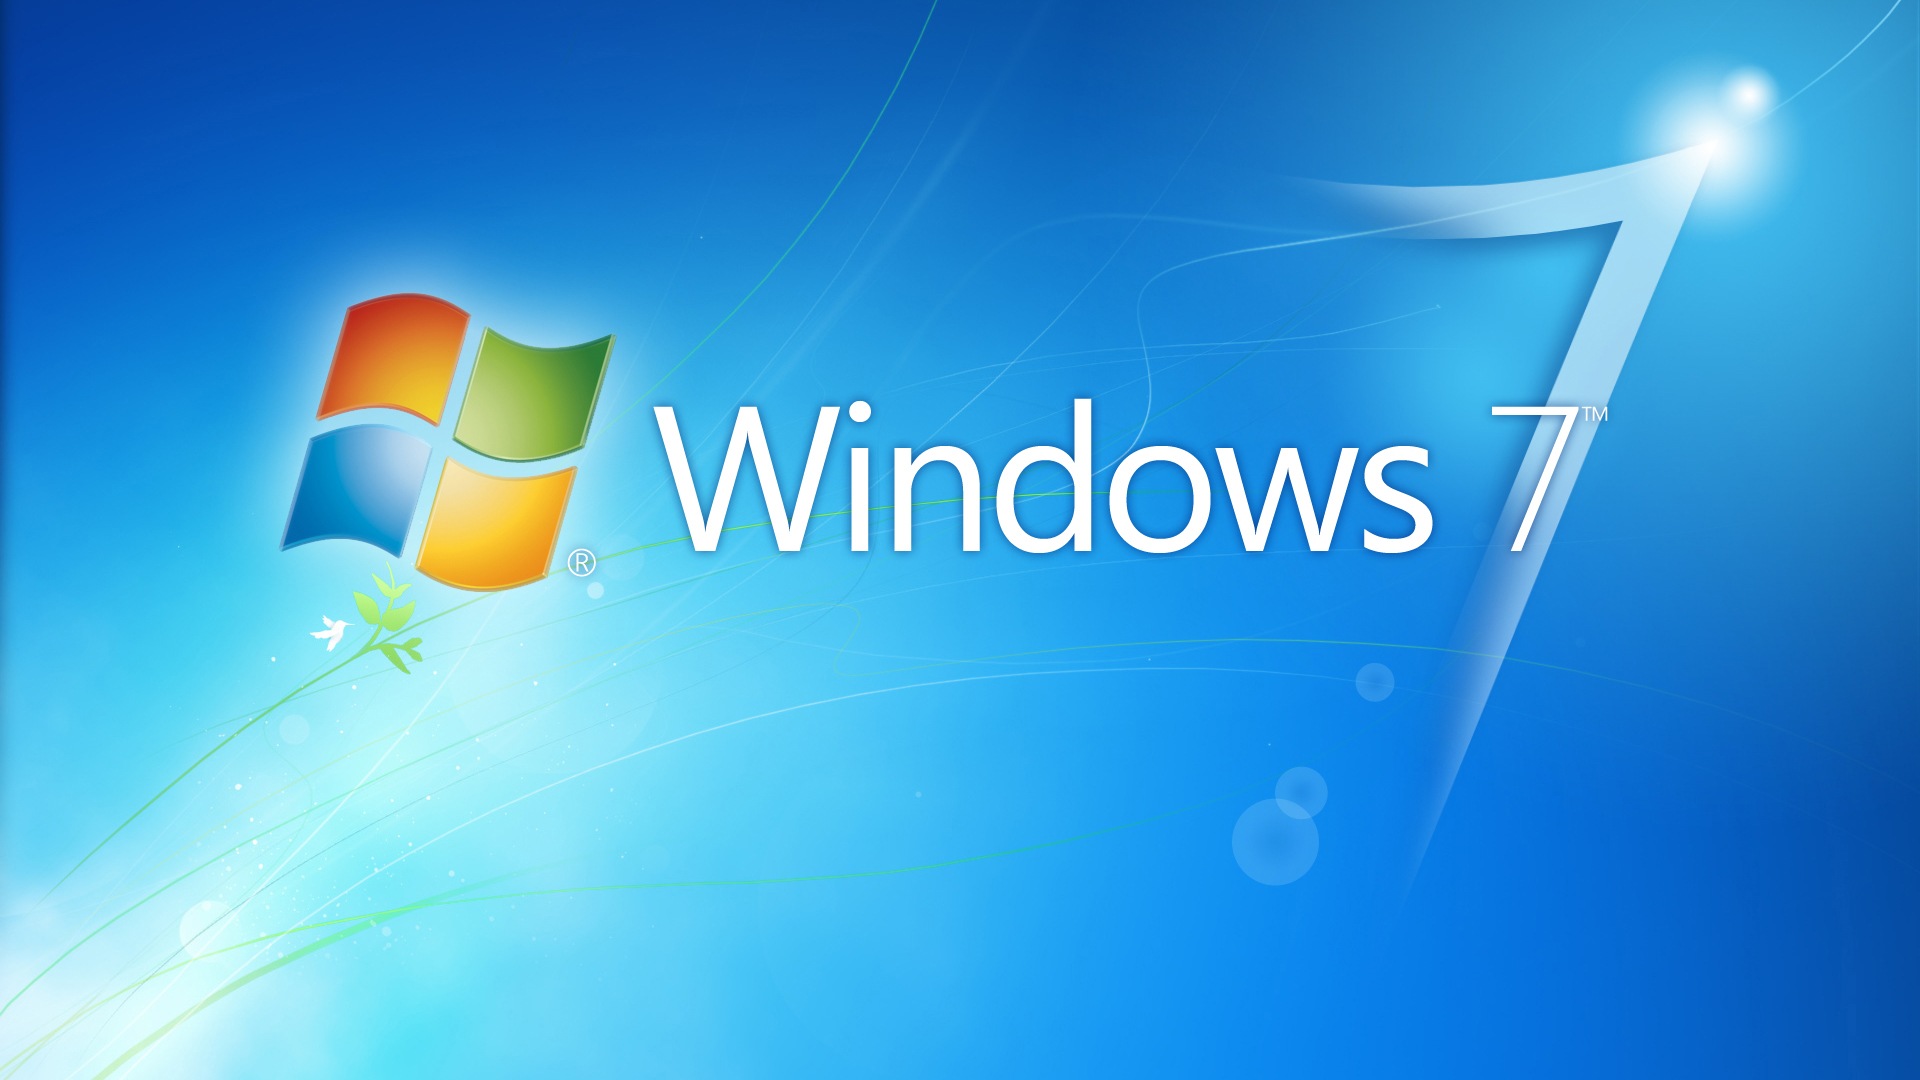 Лучшая windows 7. Виндовс 7. Microsoft Windows 7. Логотип виндовс 7. Картинки виндовс 7.